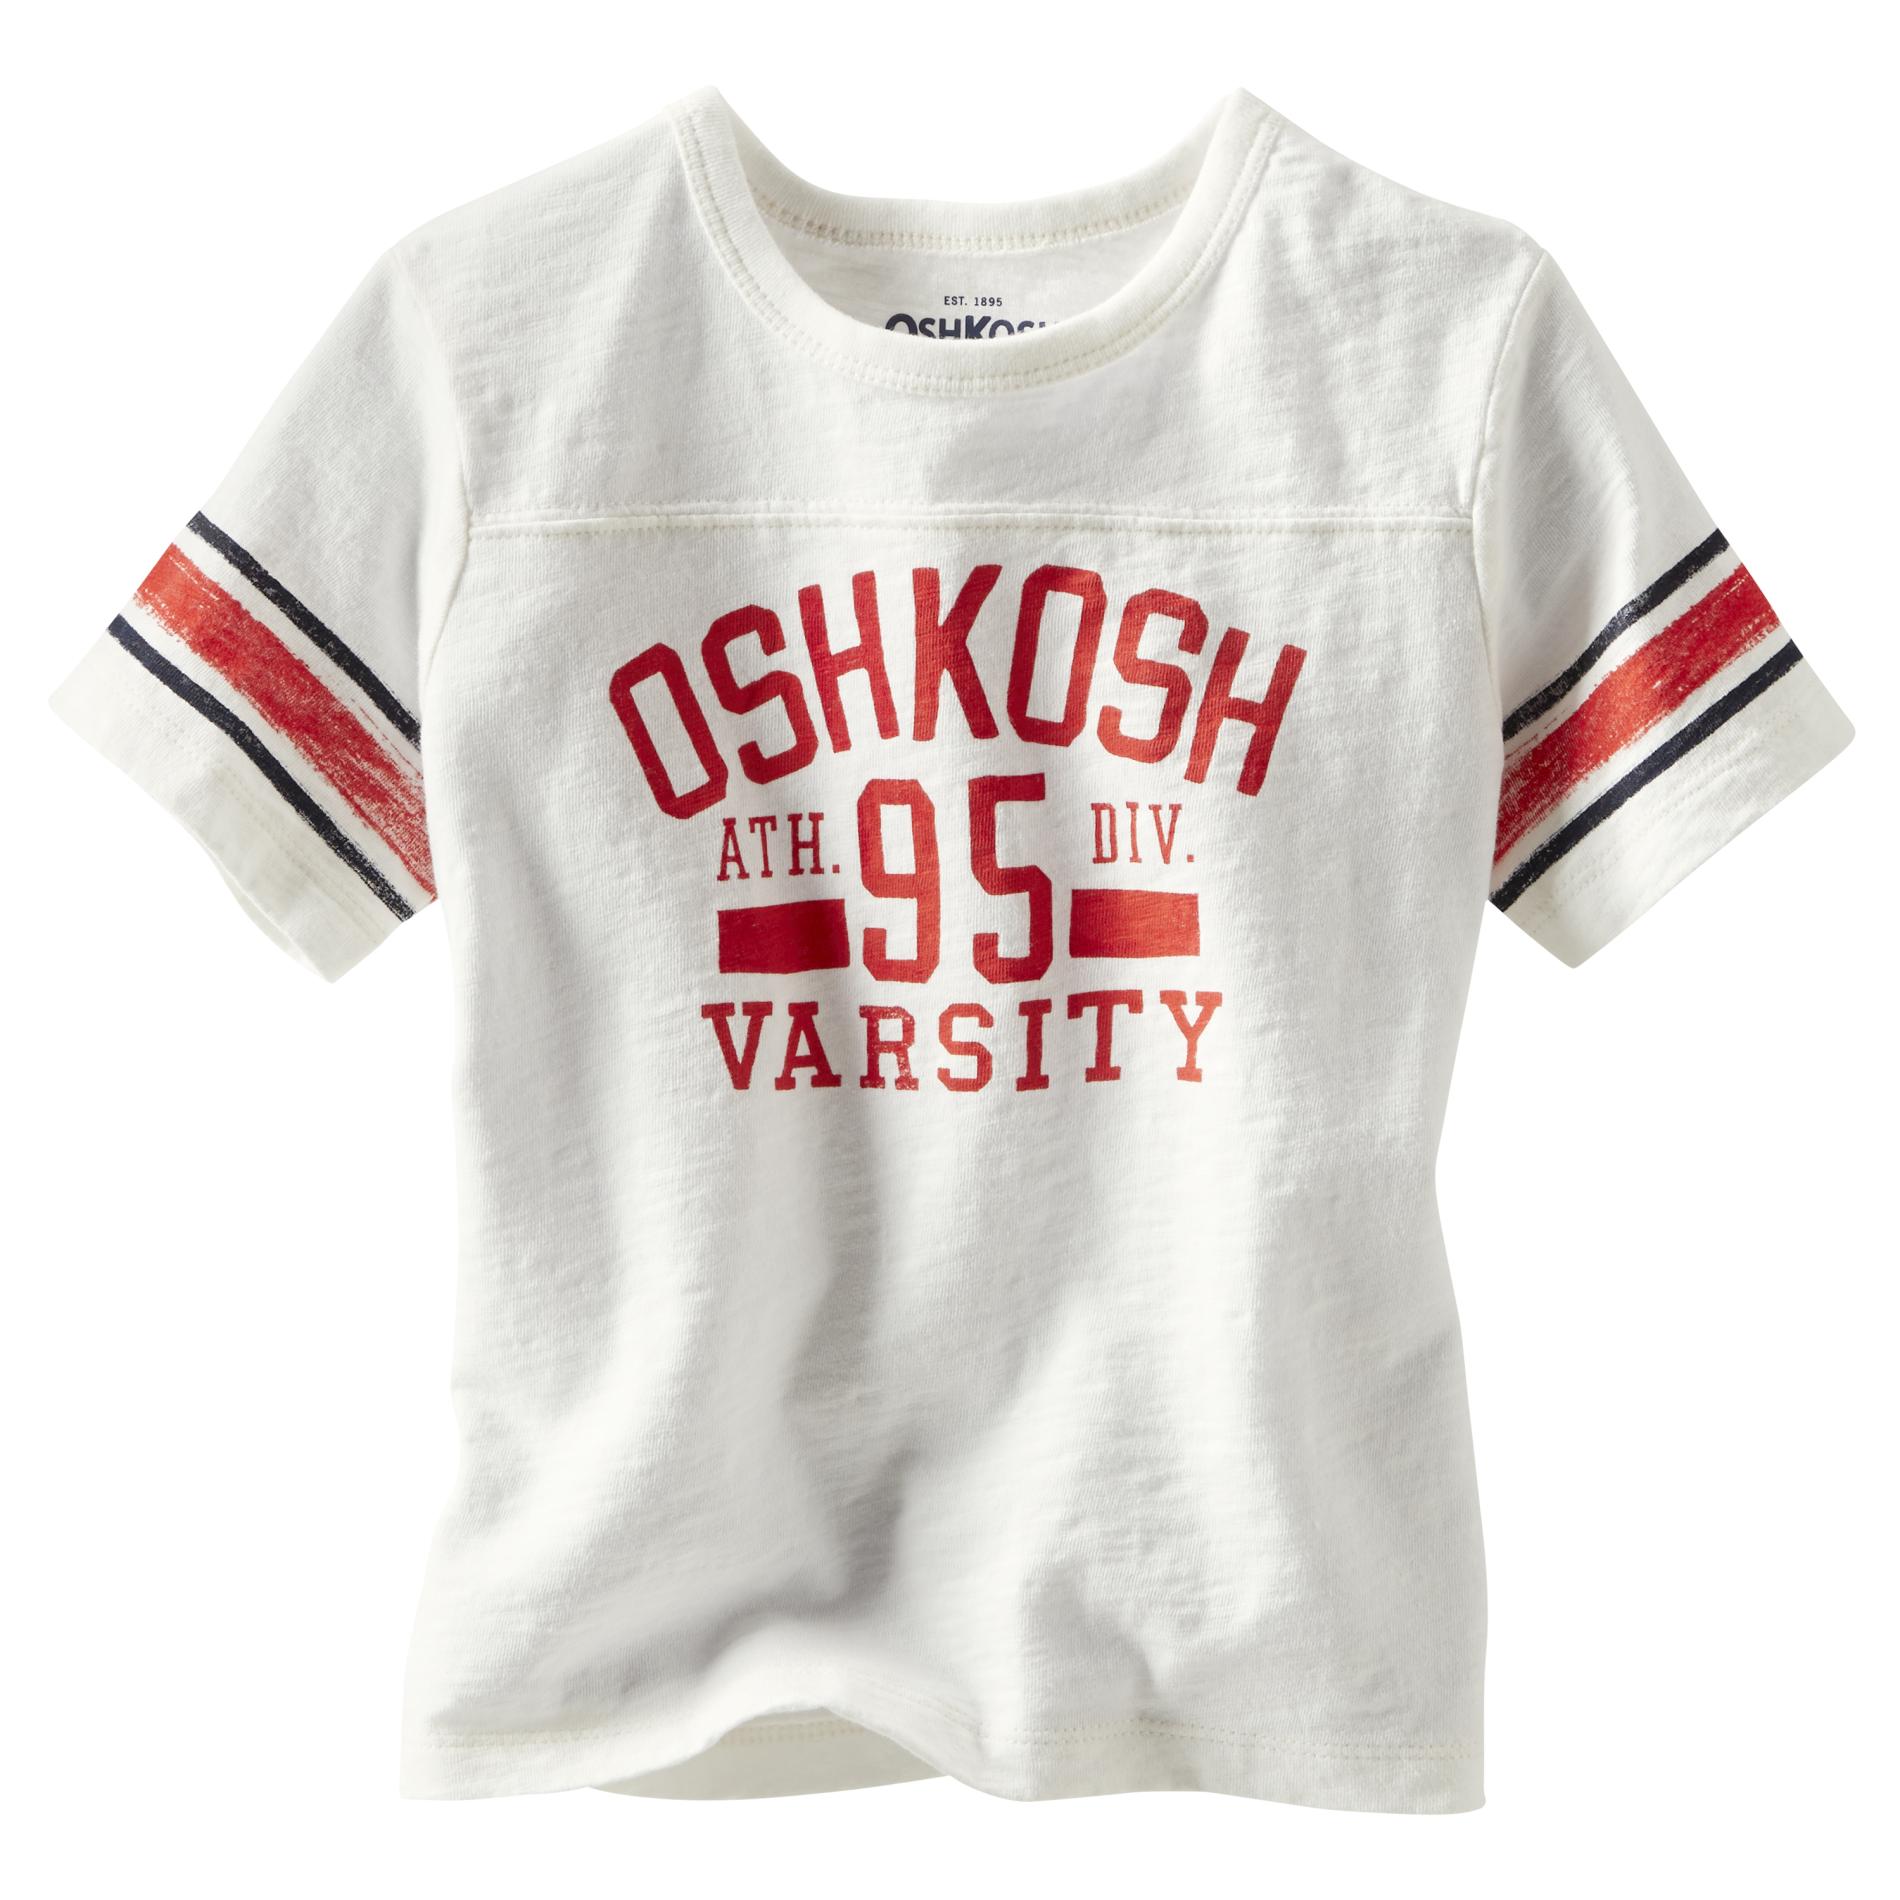 OshKosh Boy's Graphic T-Shirt - Varsity